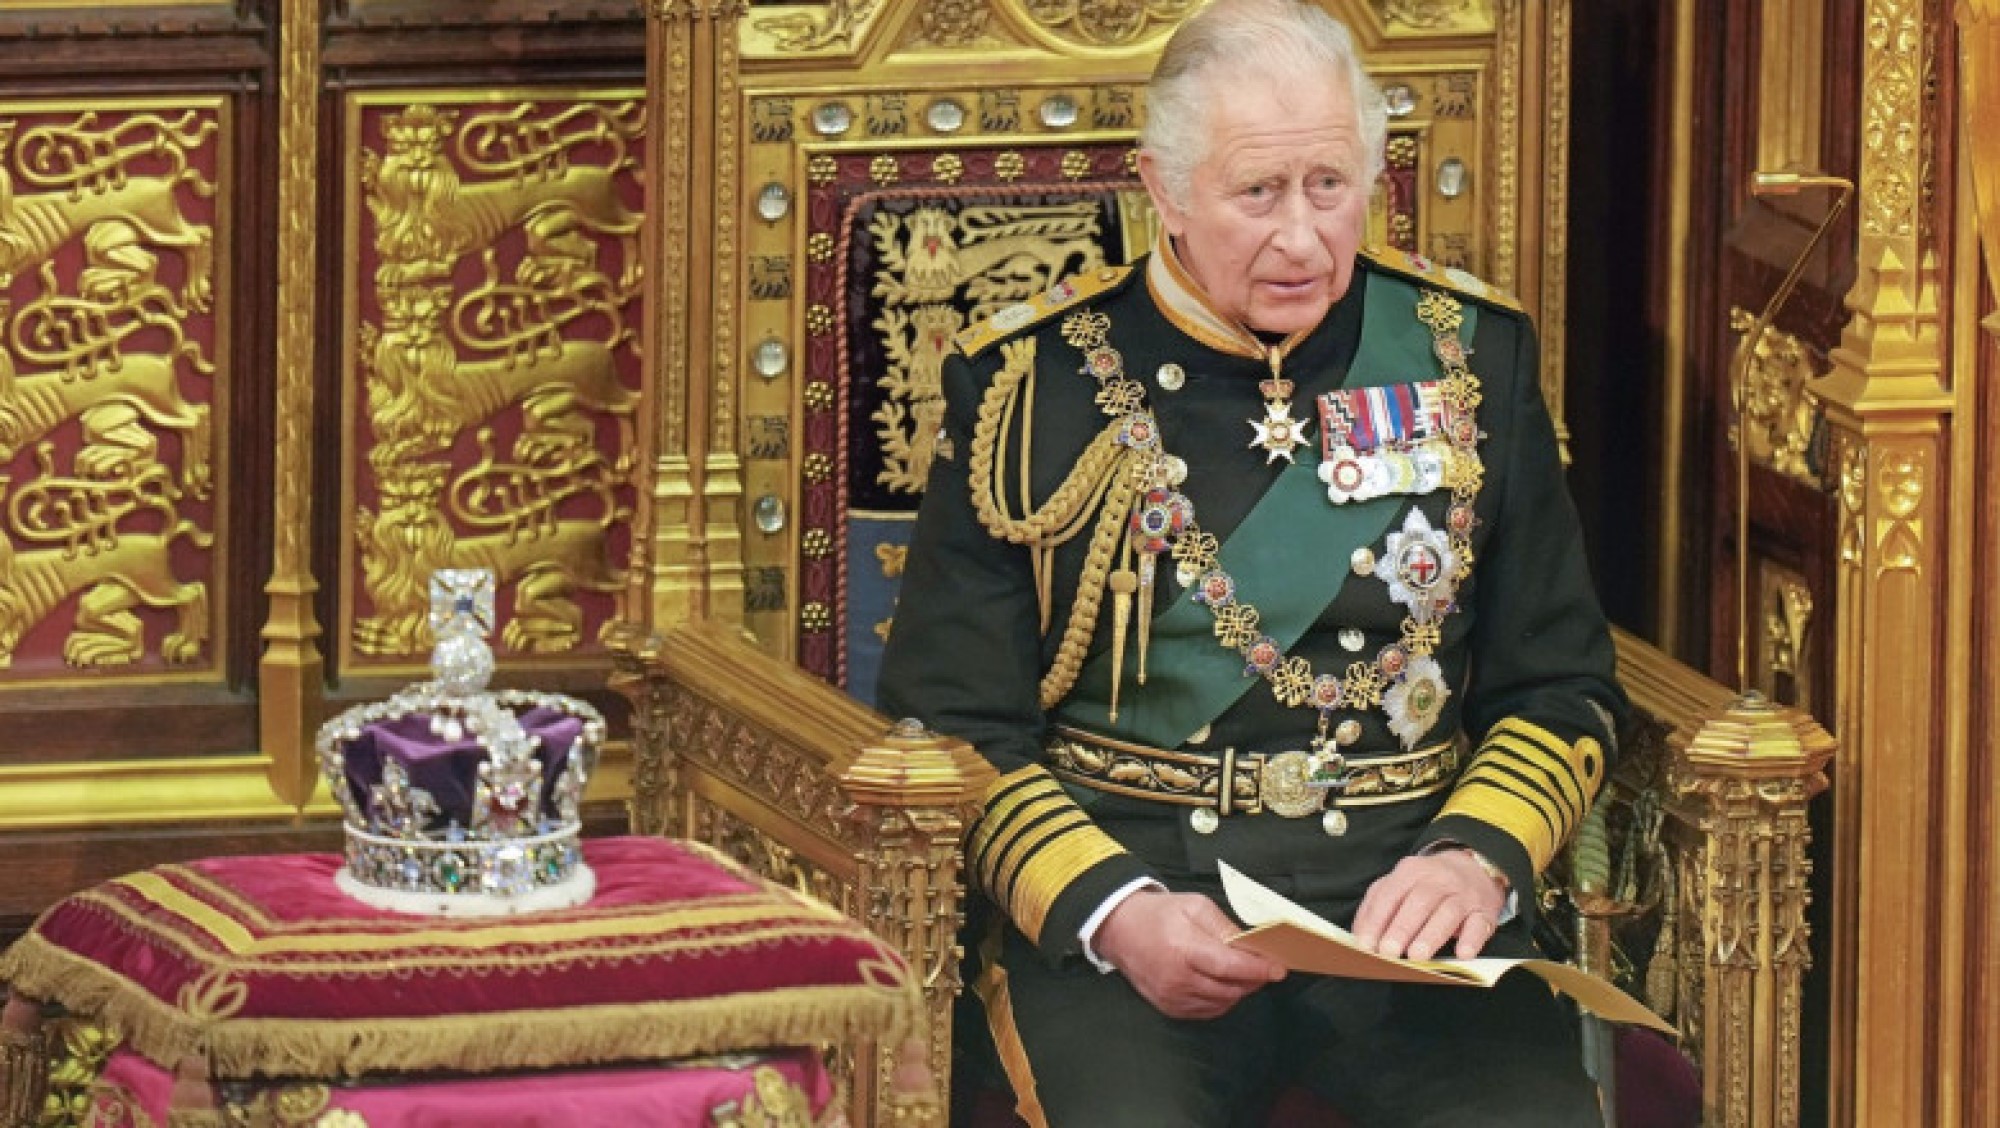 Regele Charles vrea ca Harry și Meghan să fie prezenți la încoronarea sa din luna mai. Există însă și o piedică